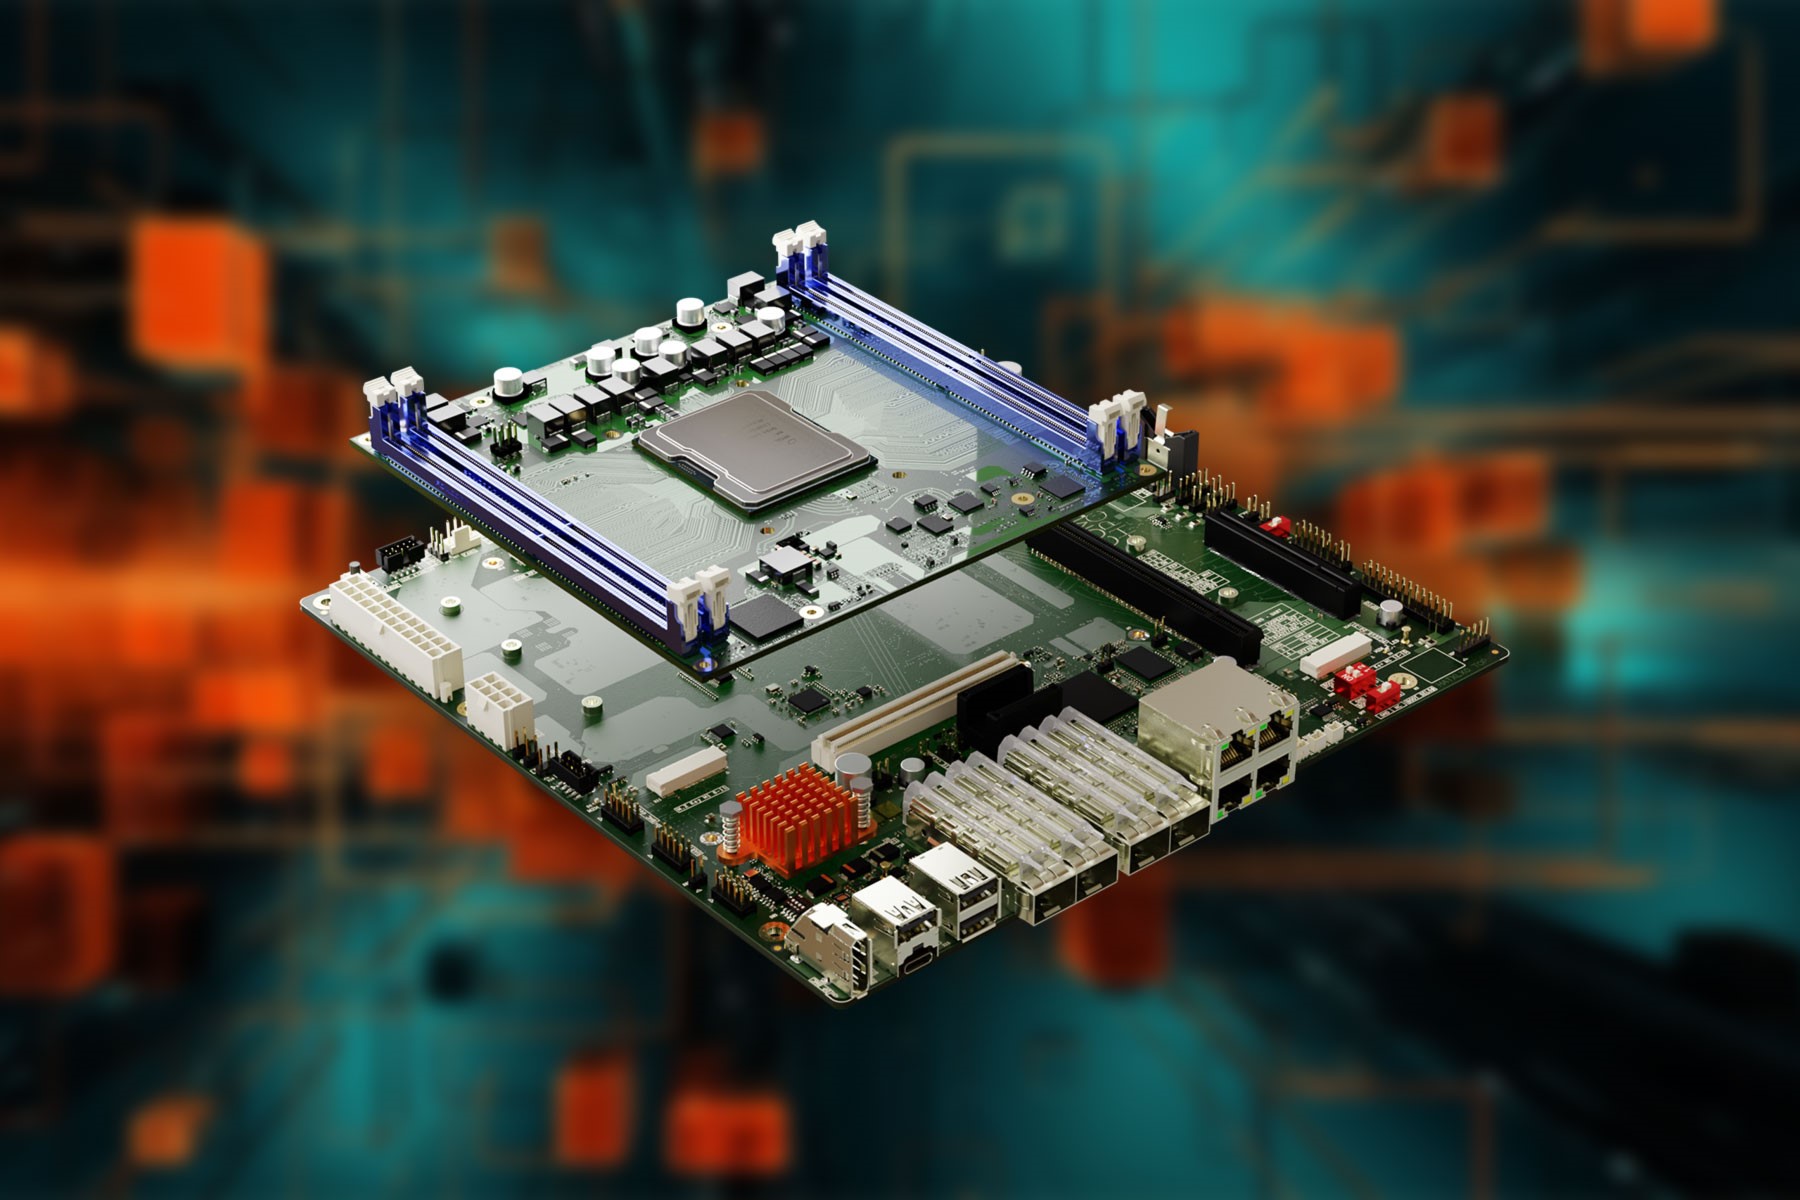 全新 µATX 服务器载板为英特尔 Ice Lake D 处理器系列产品提供更多可扩展性